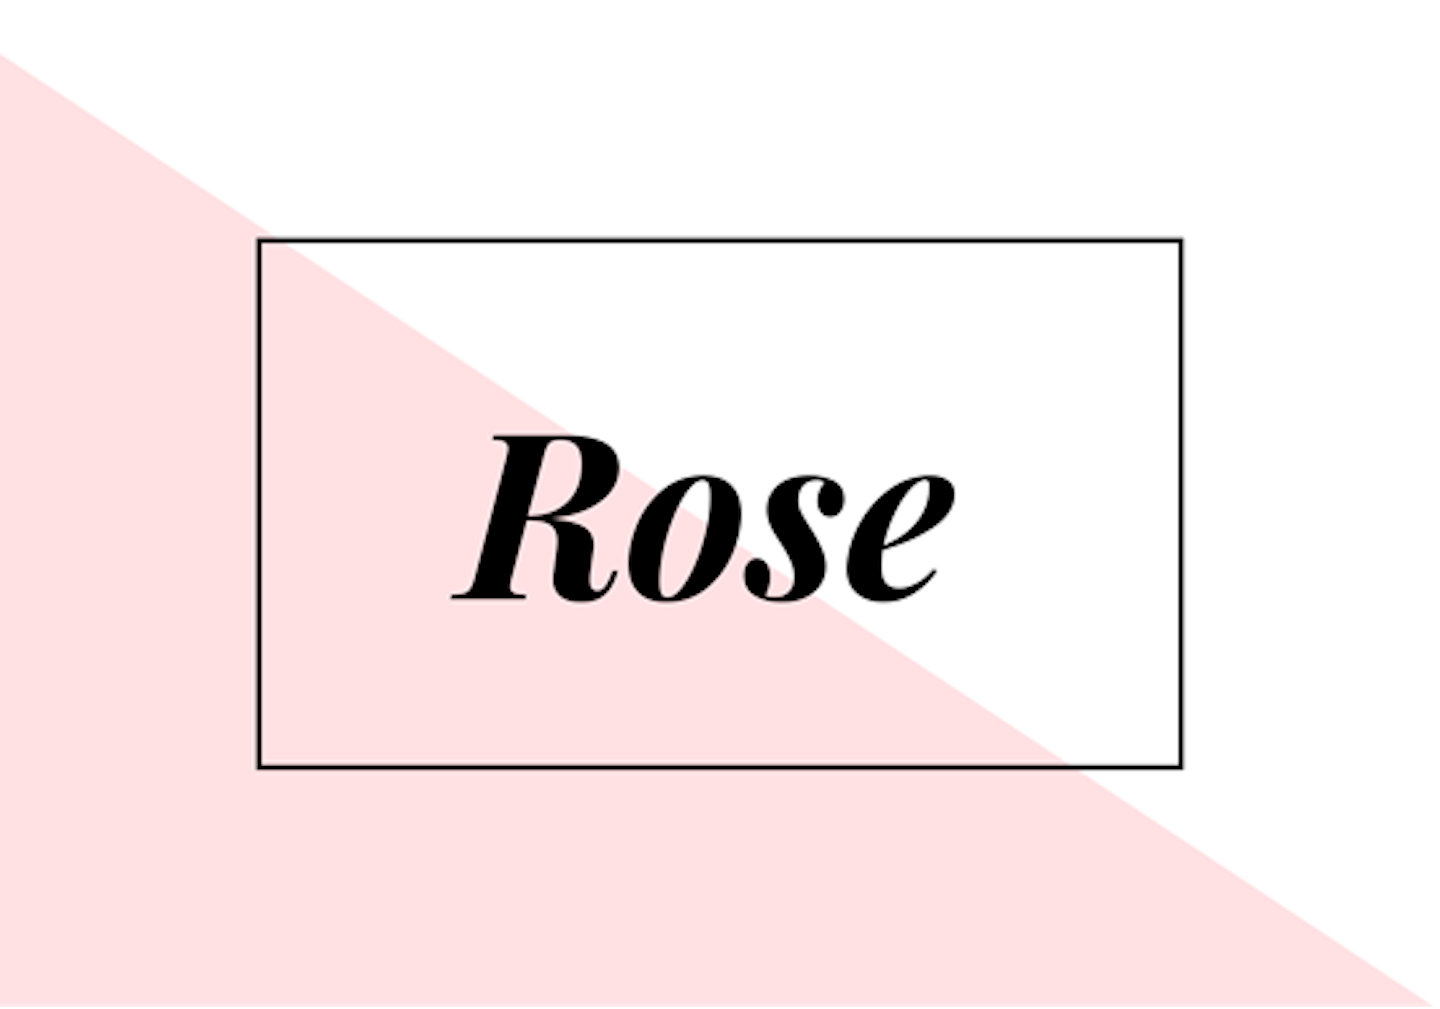 21) Rose